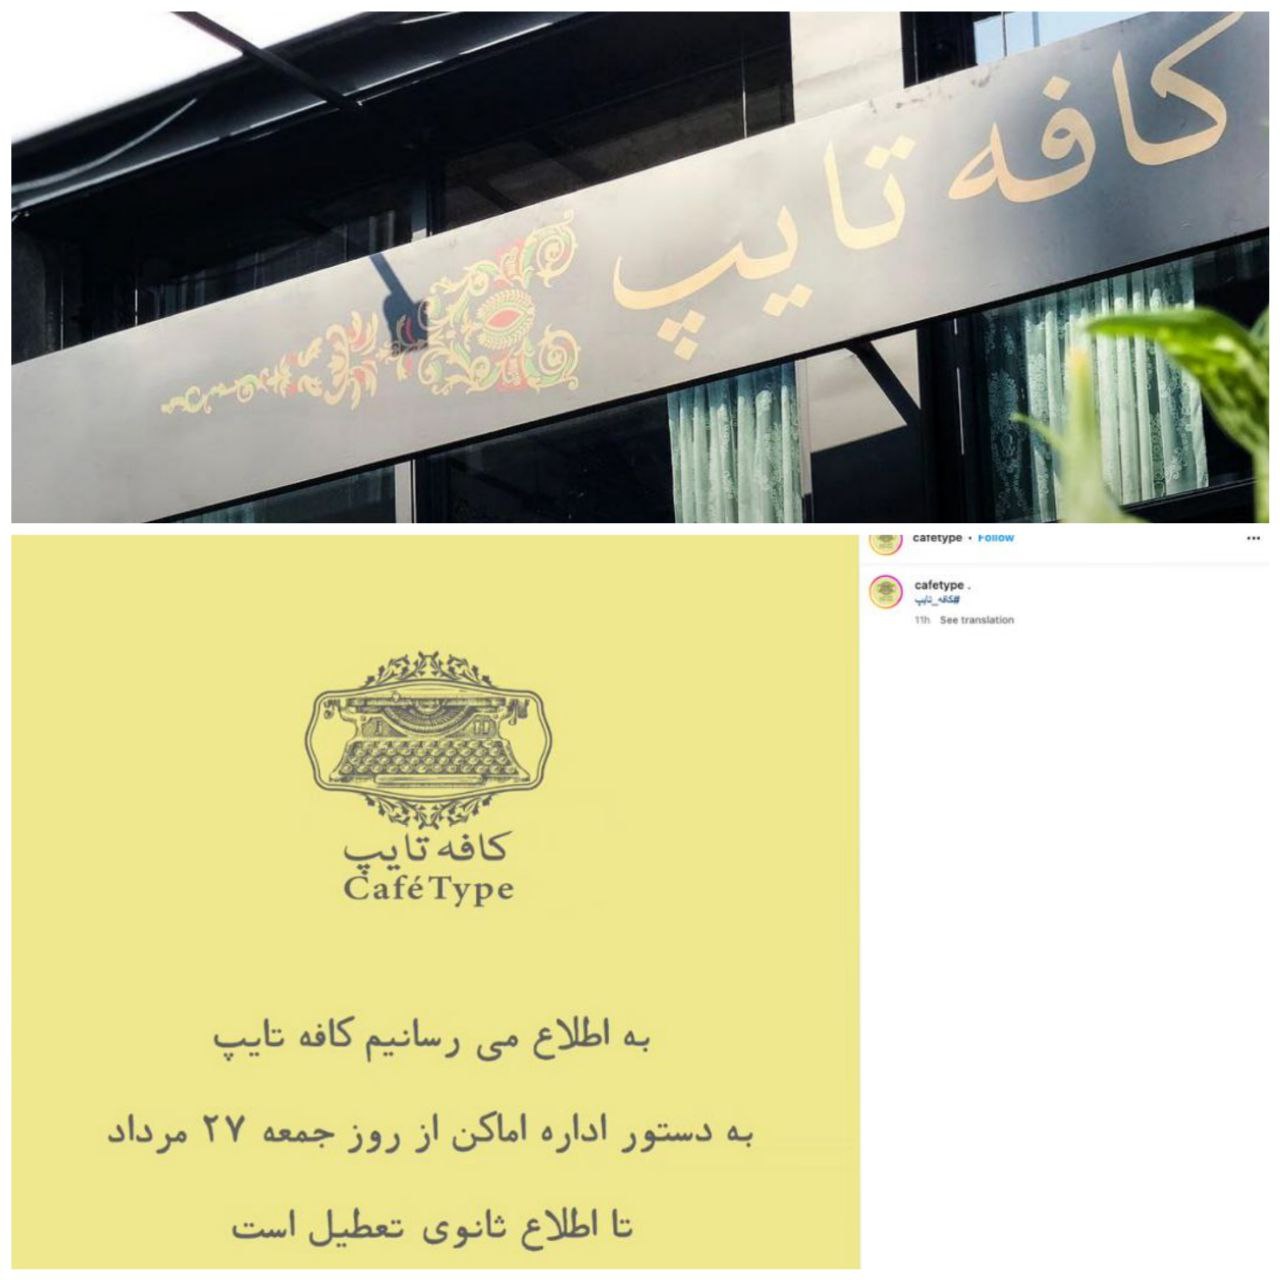 کافه مشهور تهران باز هم خبرساز شد